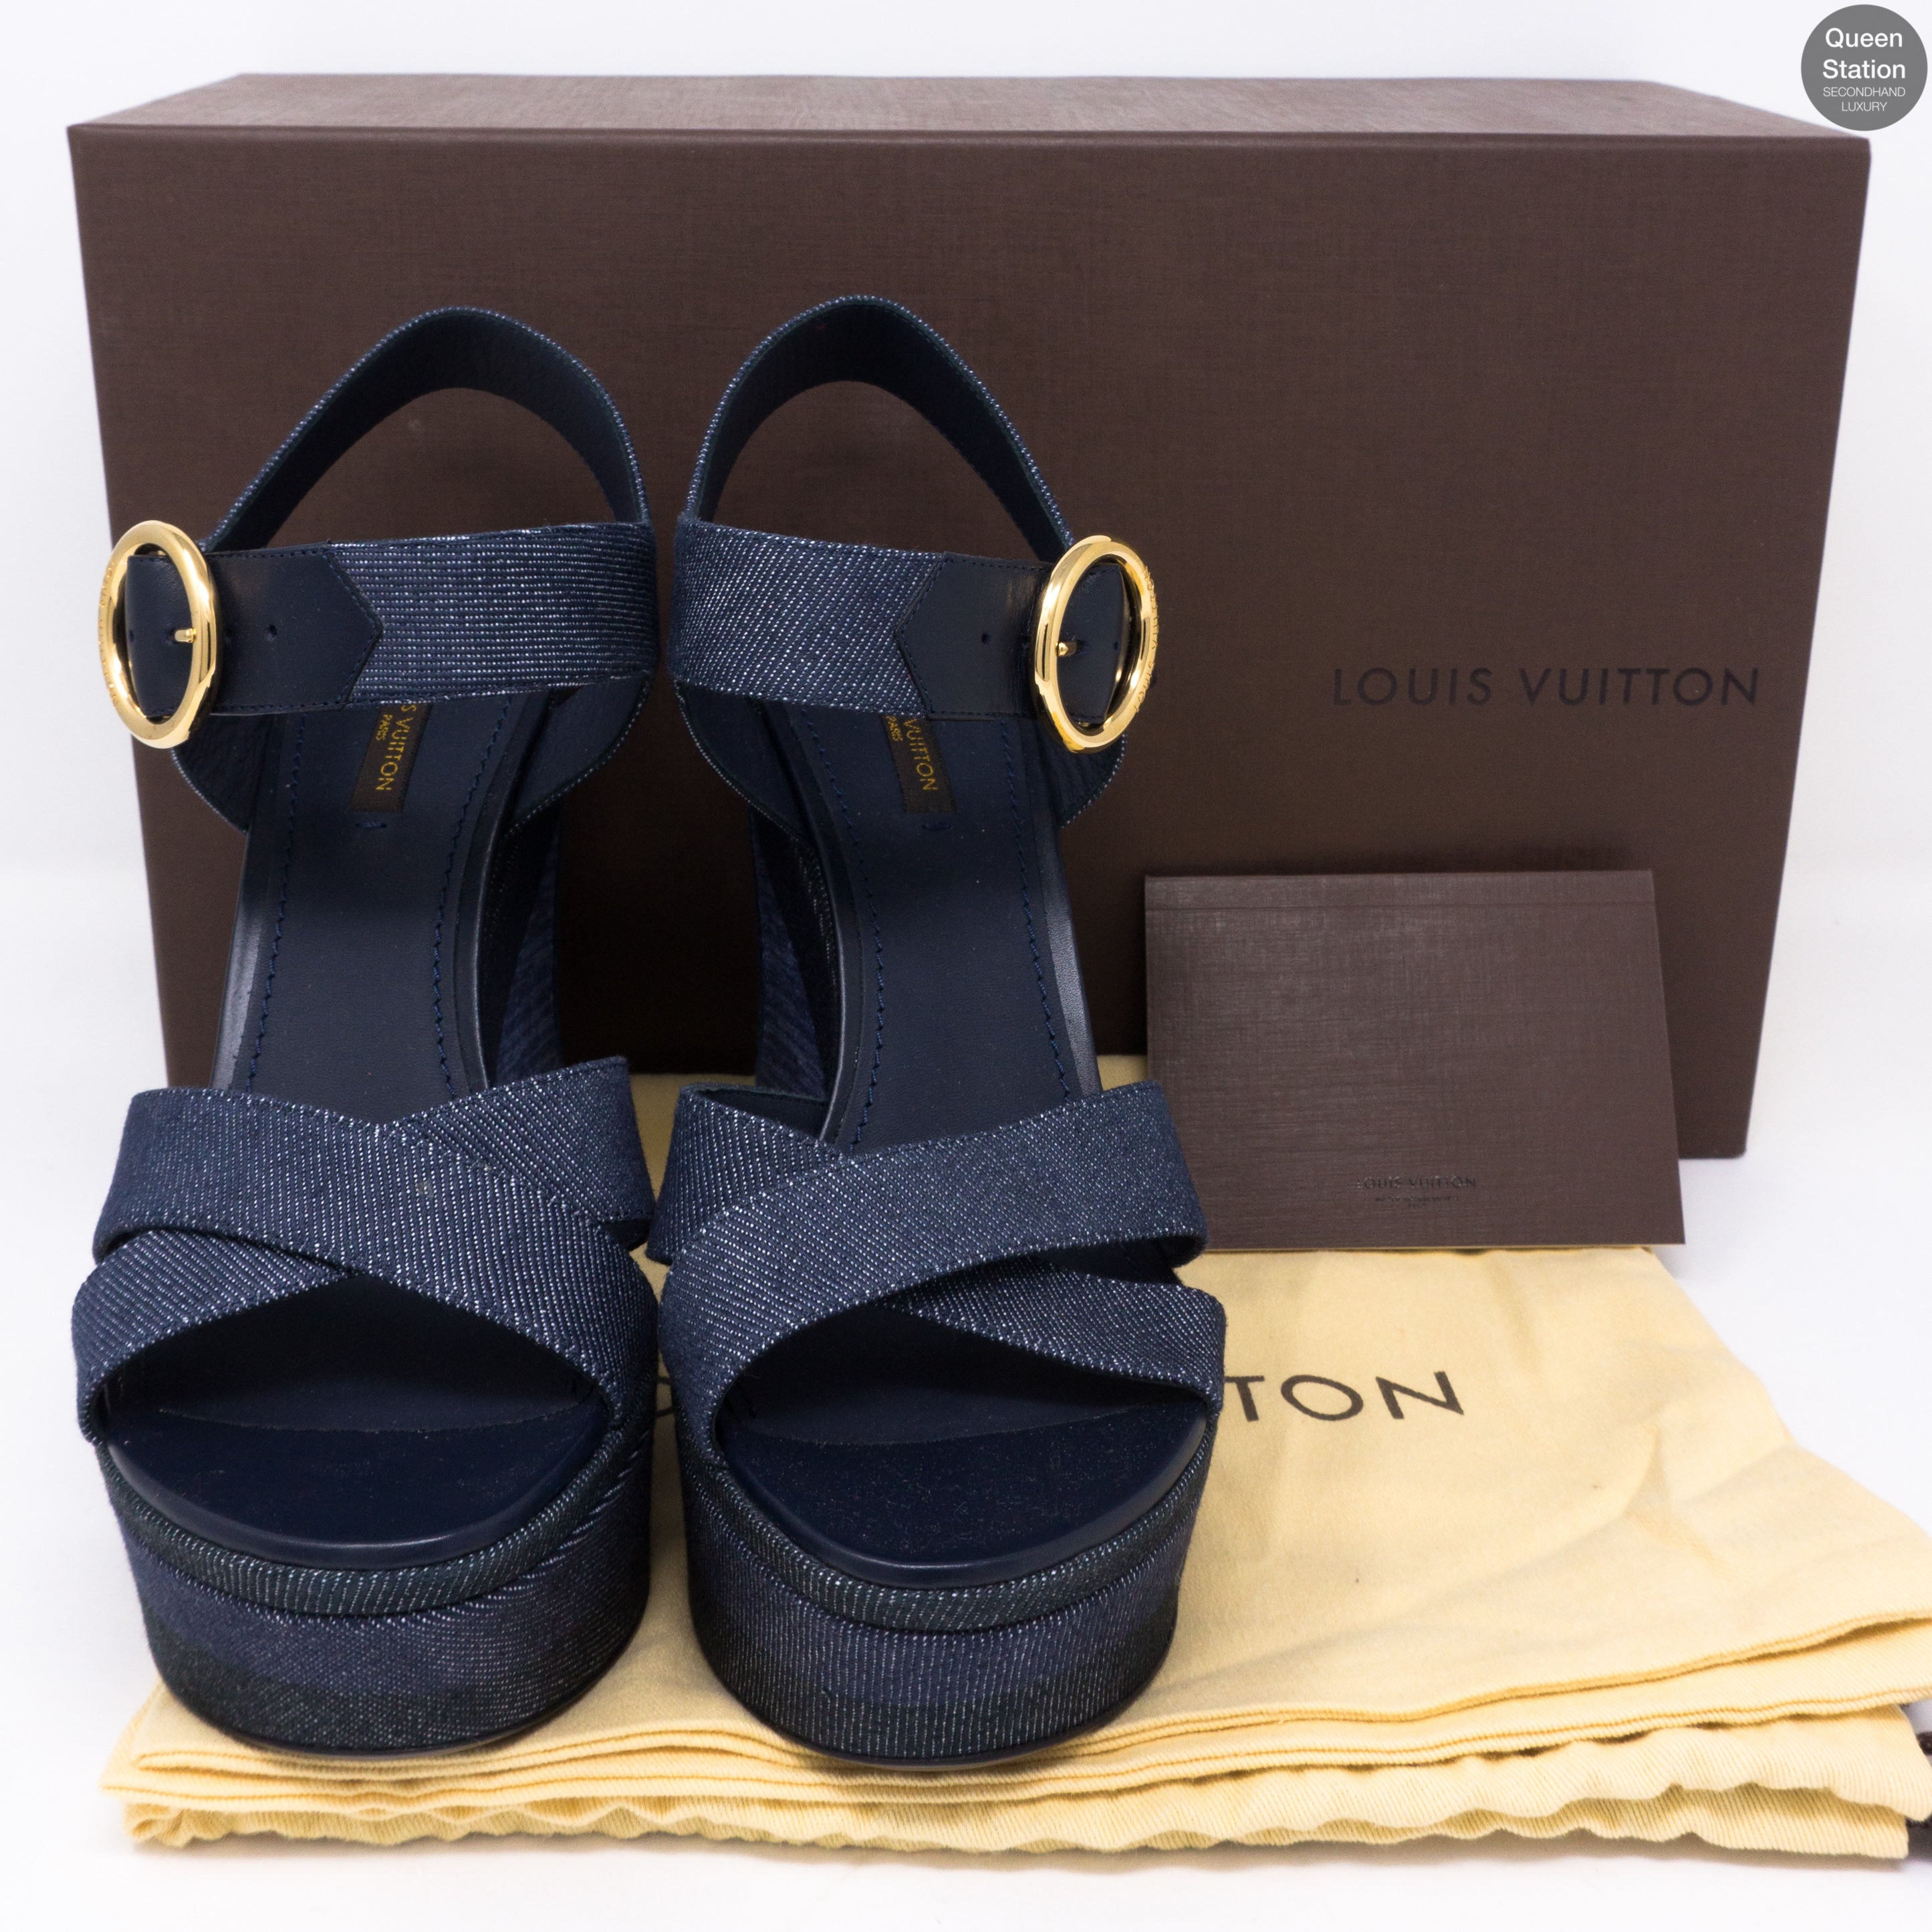 Louis Vuitton, Shoes, Authentic Louis Vuitton New Denim Ocean Wedges